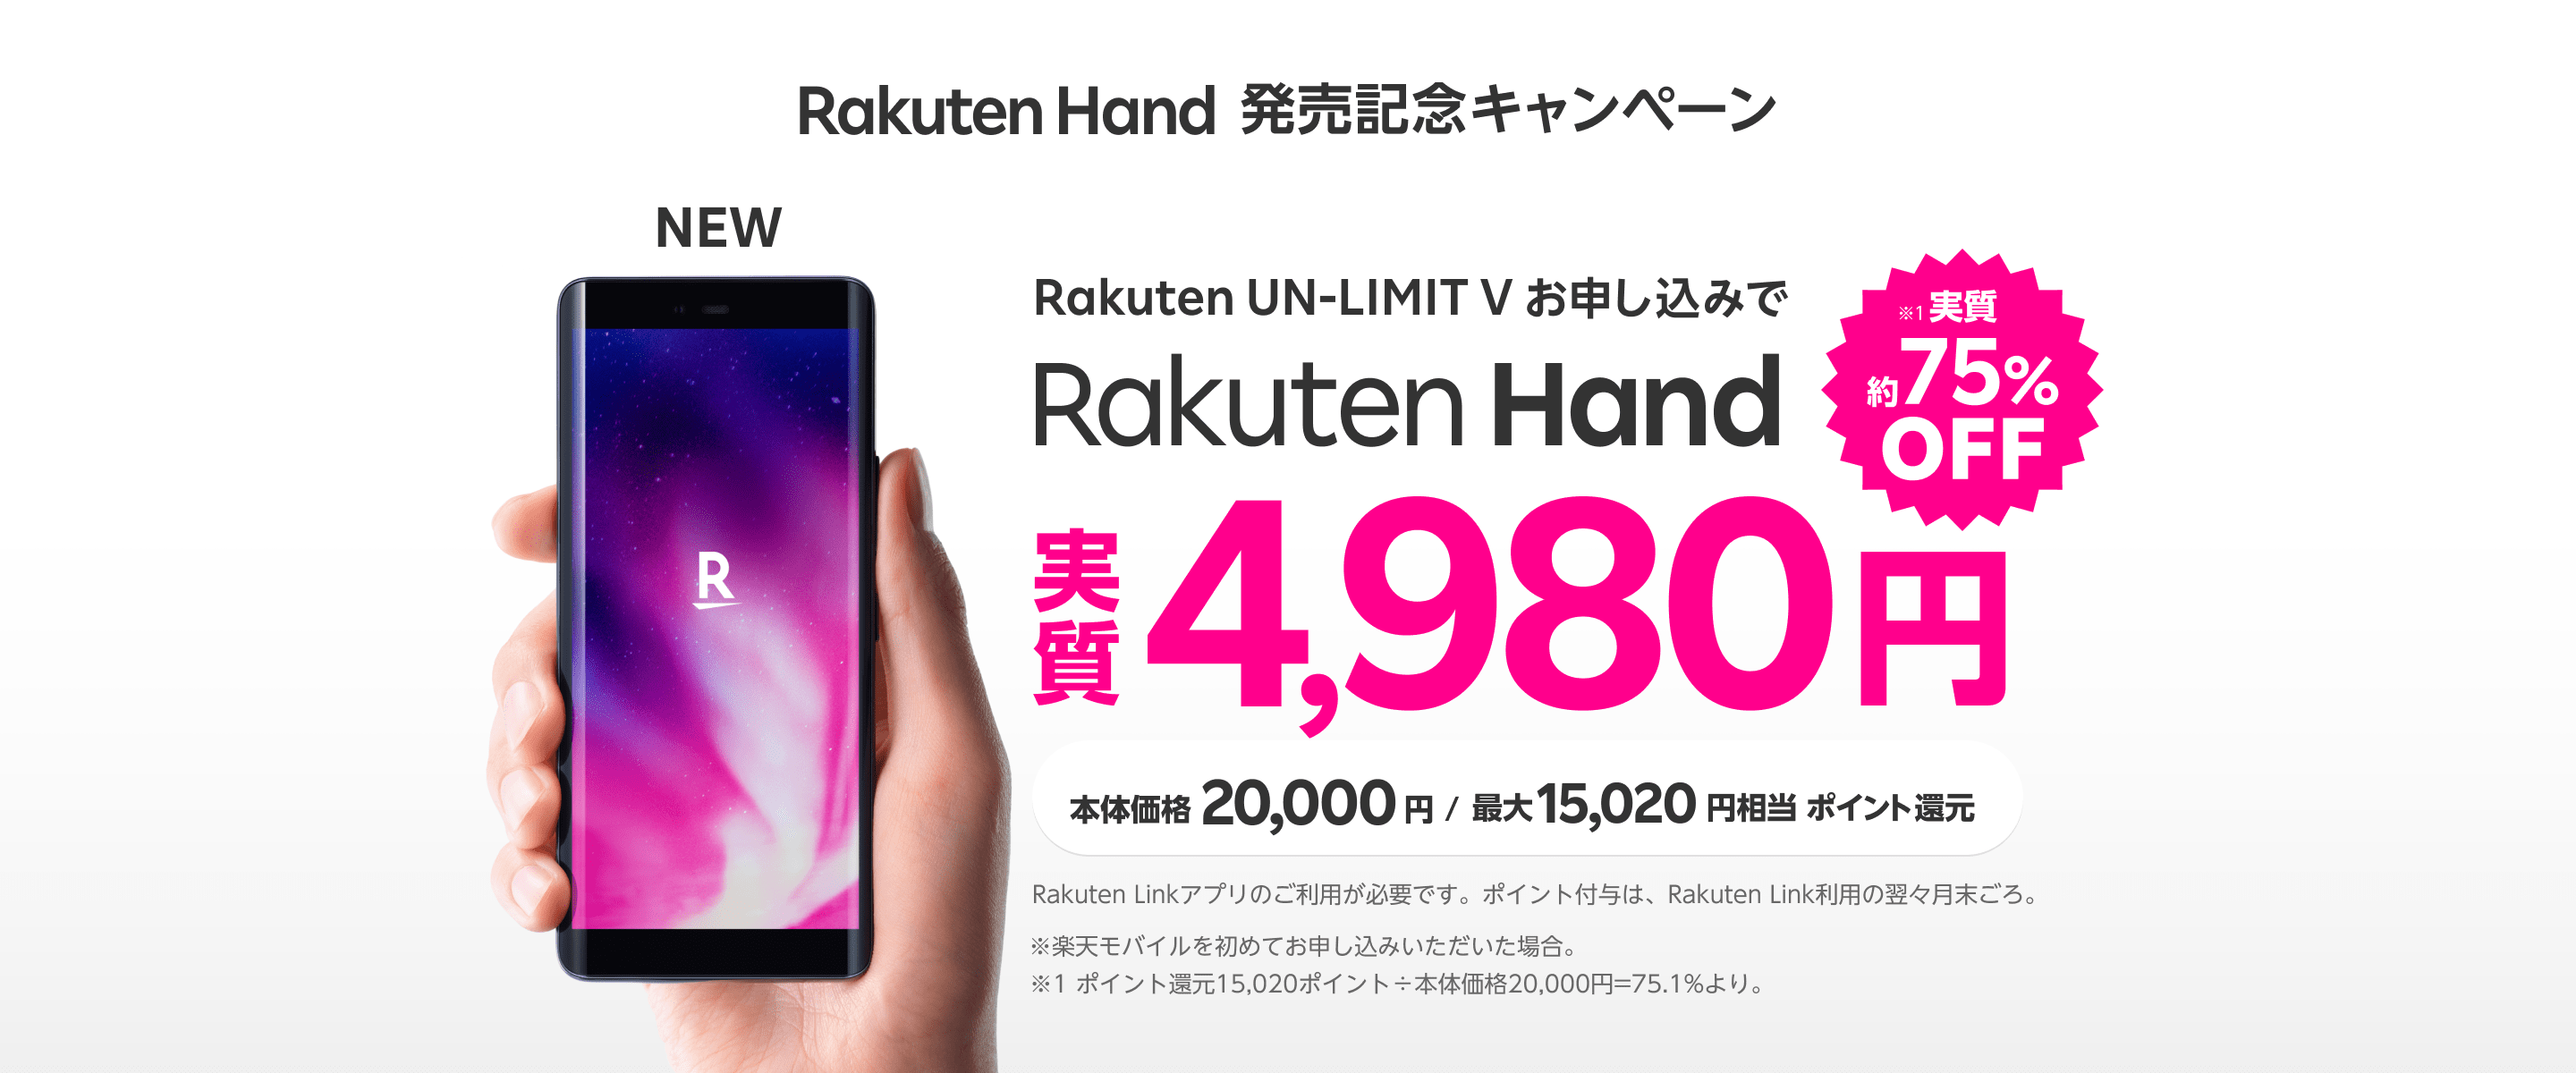 Rakuten Hand 発売記念キャンペーン